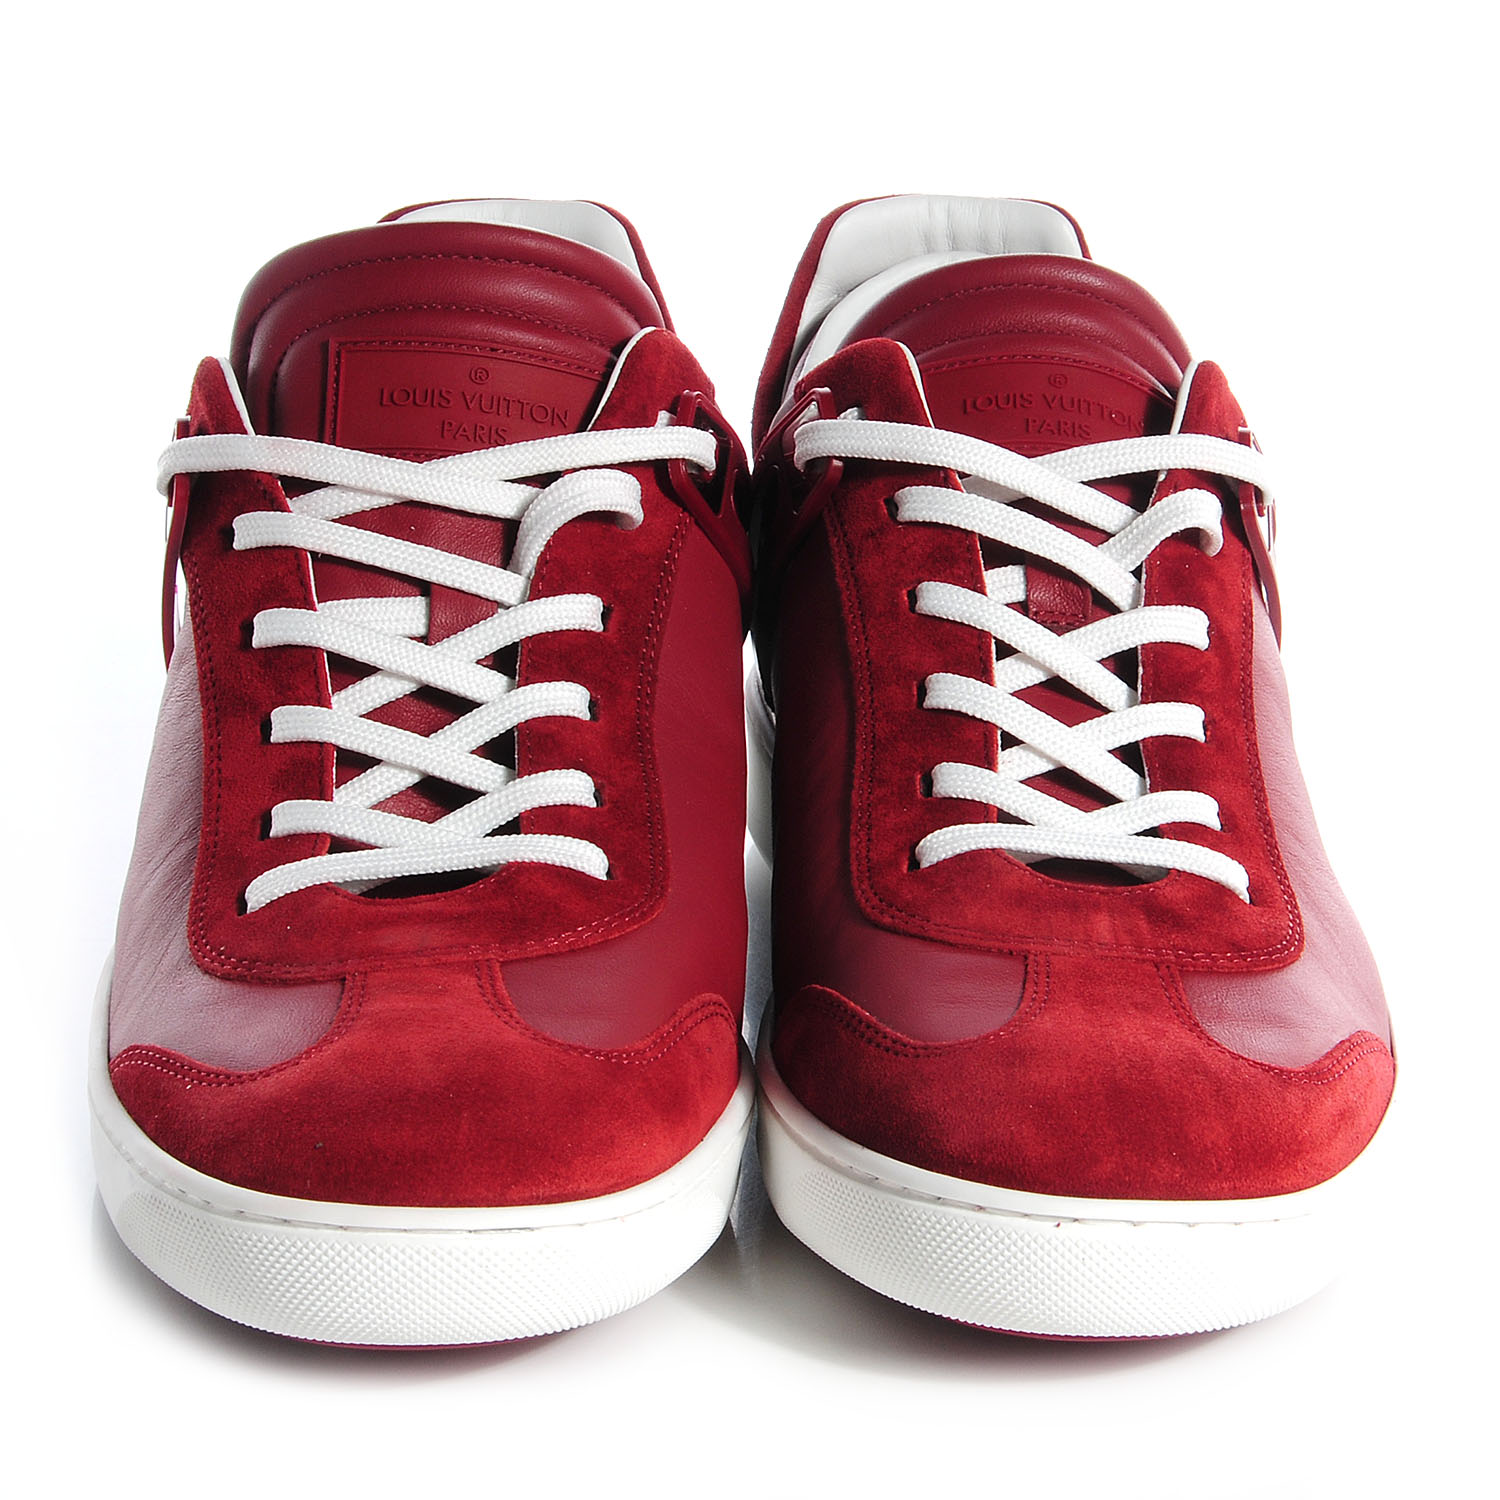 LOUIS VUITTON Mens Damier Embossed Calfskin Suede Genesis Sneakers 10 Carmine Red 79164